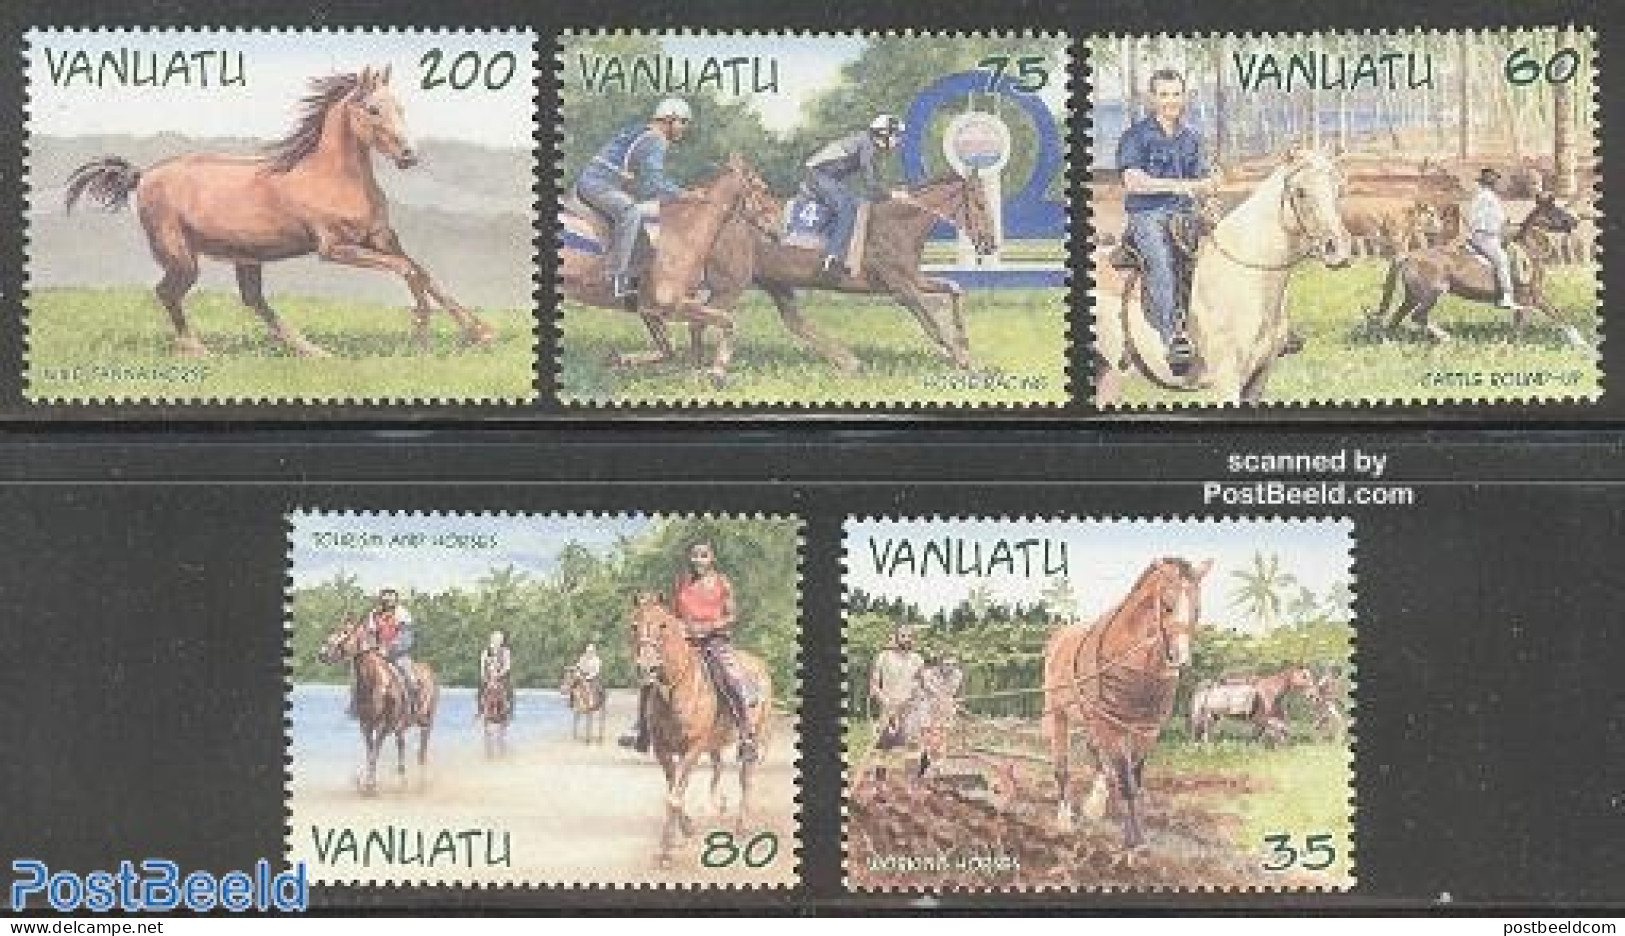 Vanuatu 2002 Tourism & Horses 5v, Mint NH, Nature - Various - Horses - Tourism - Vanuatu (1980-...)